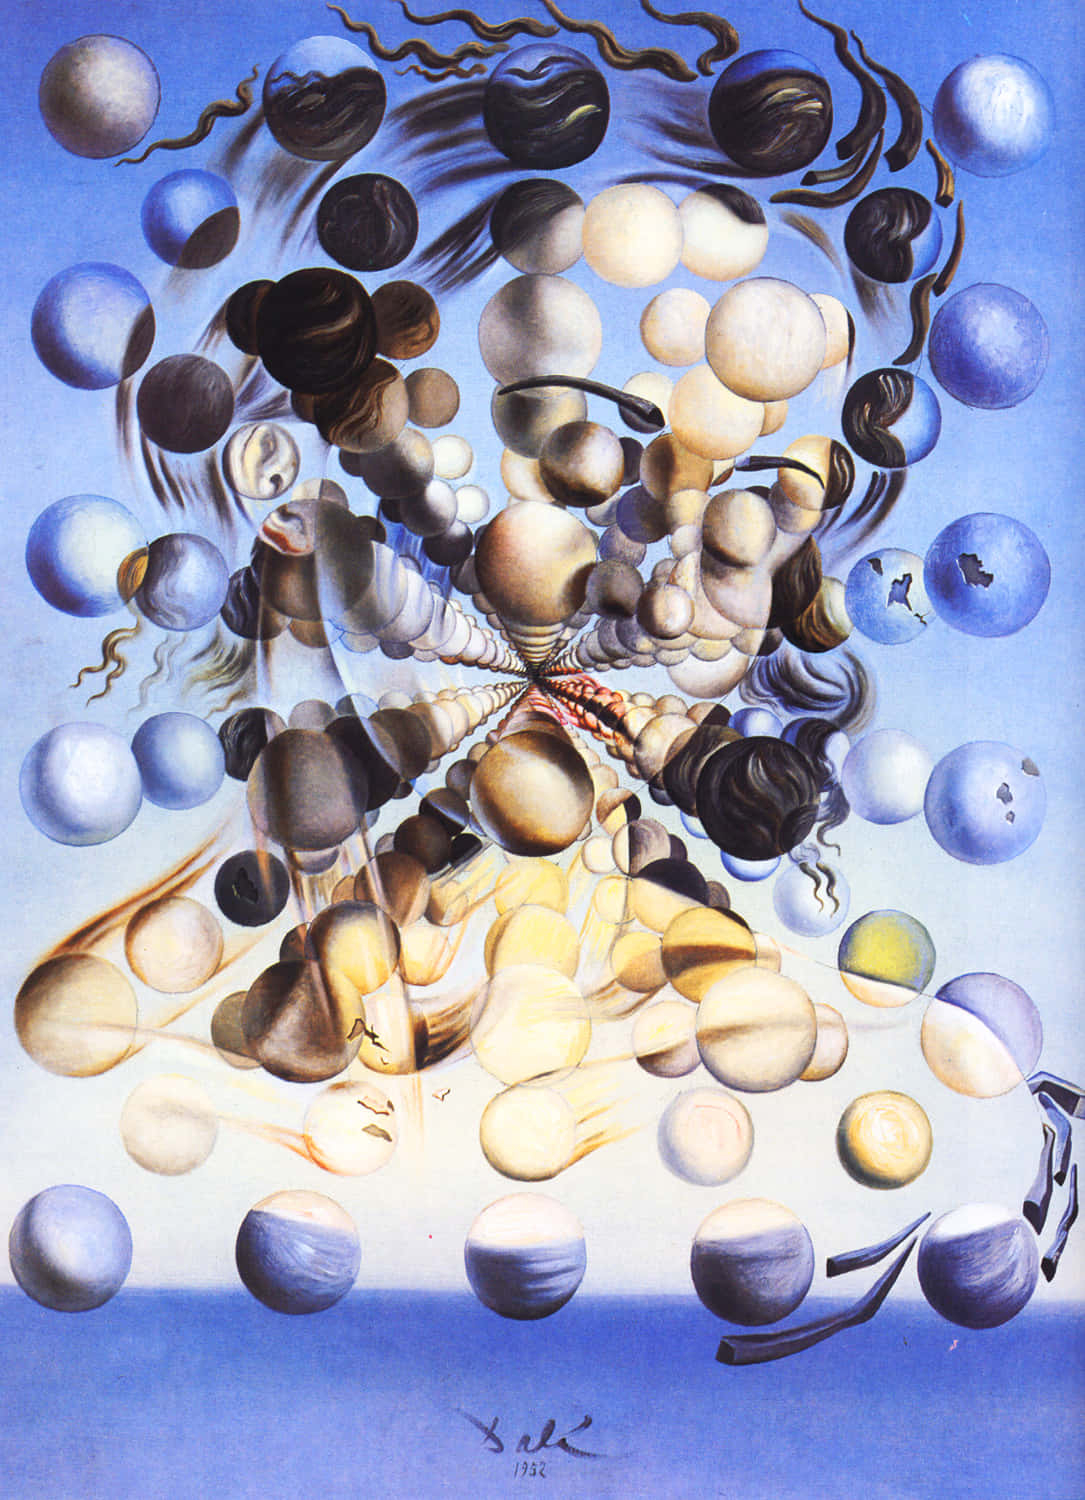 Abstract Mysticism: Salvador Dali's Artwork Wallpaper